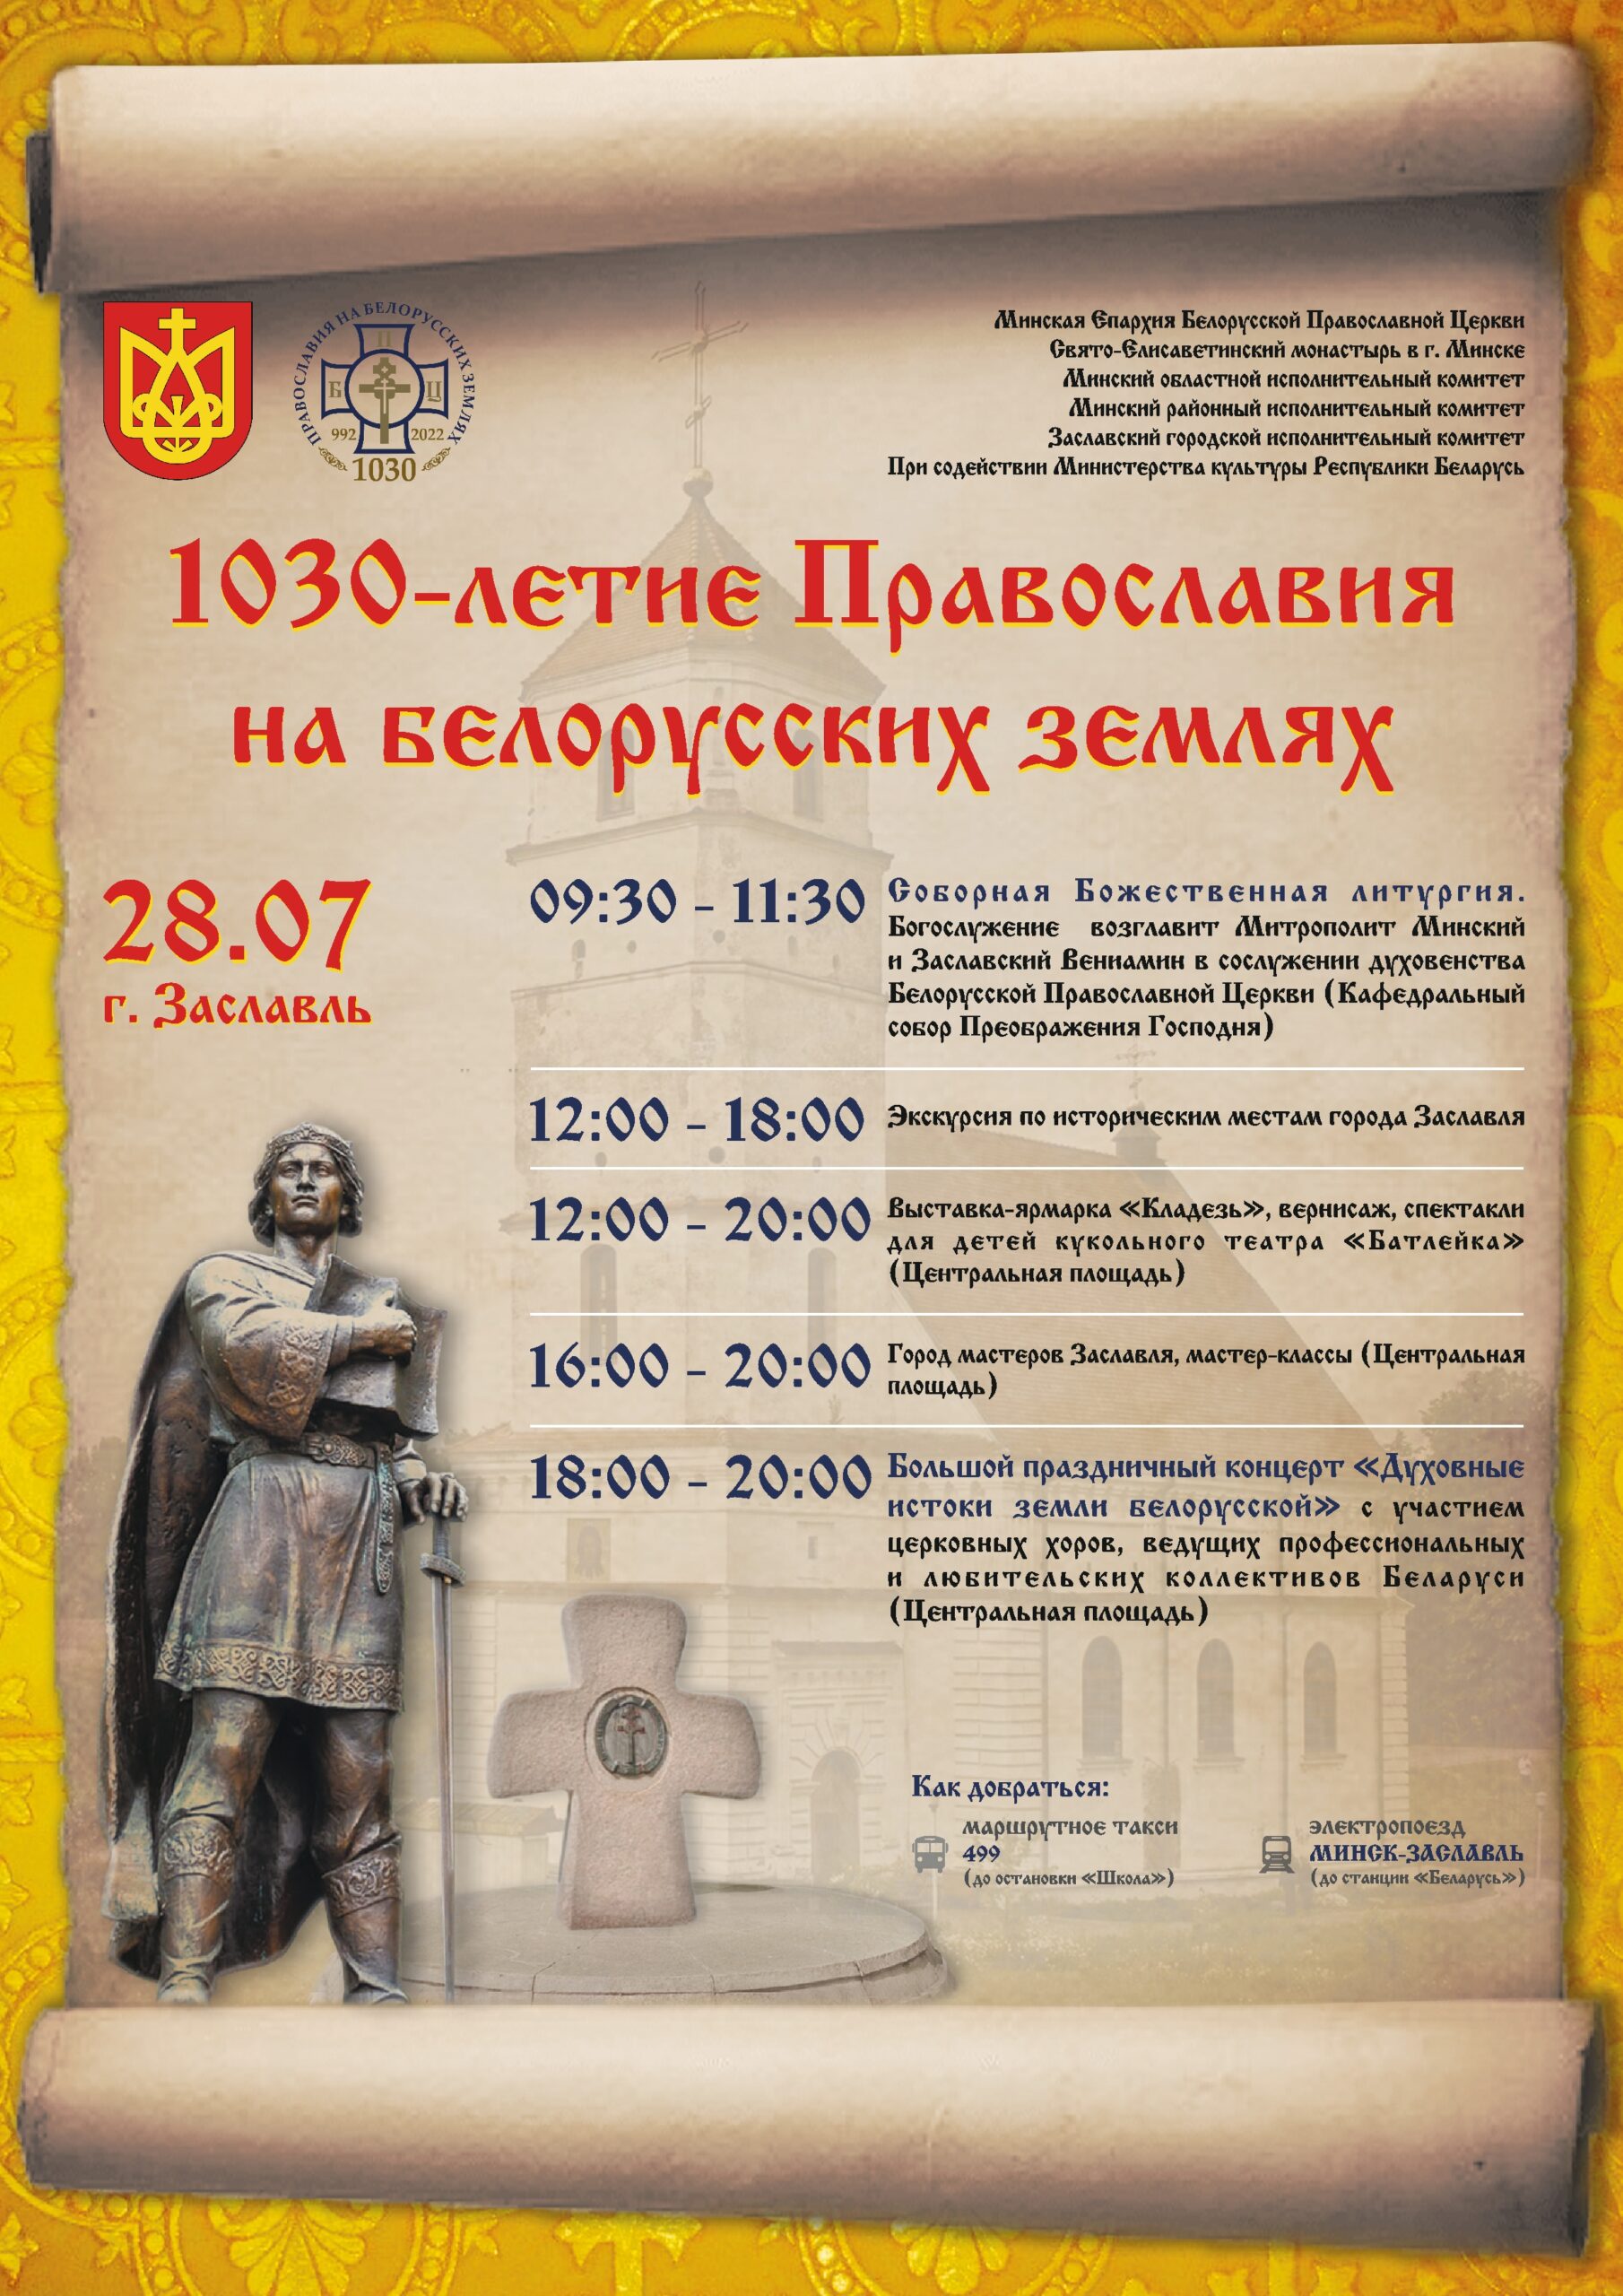 1030-летие Православия на белорусских землях